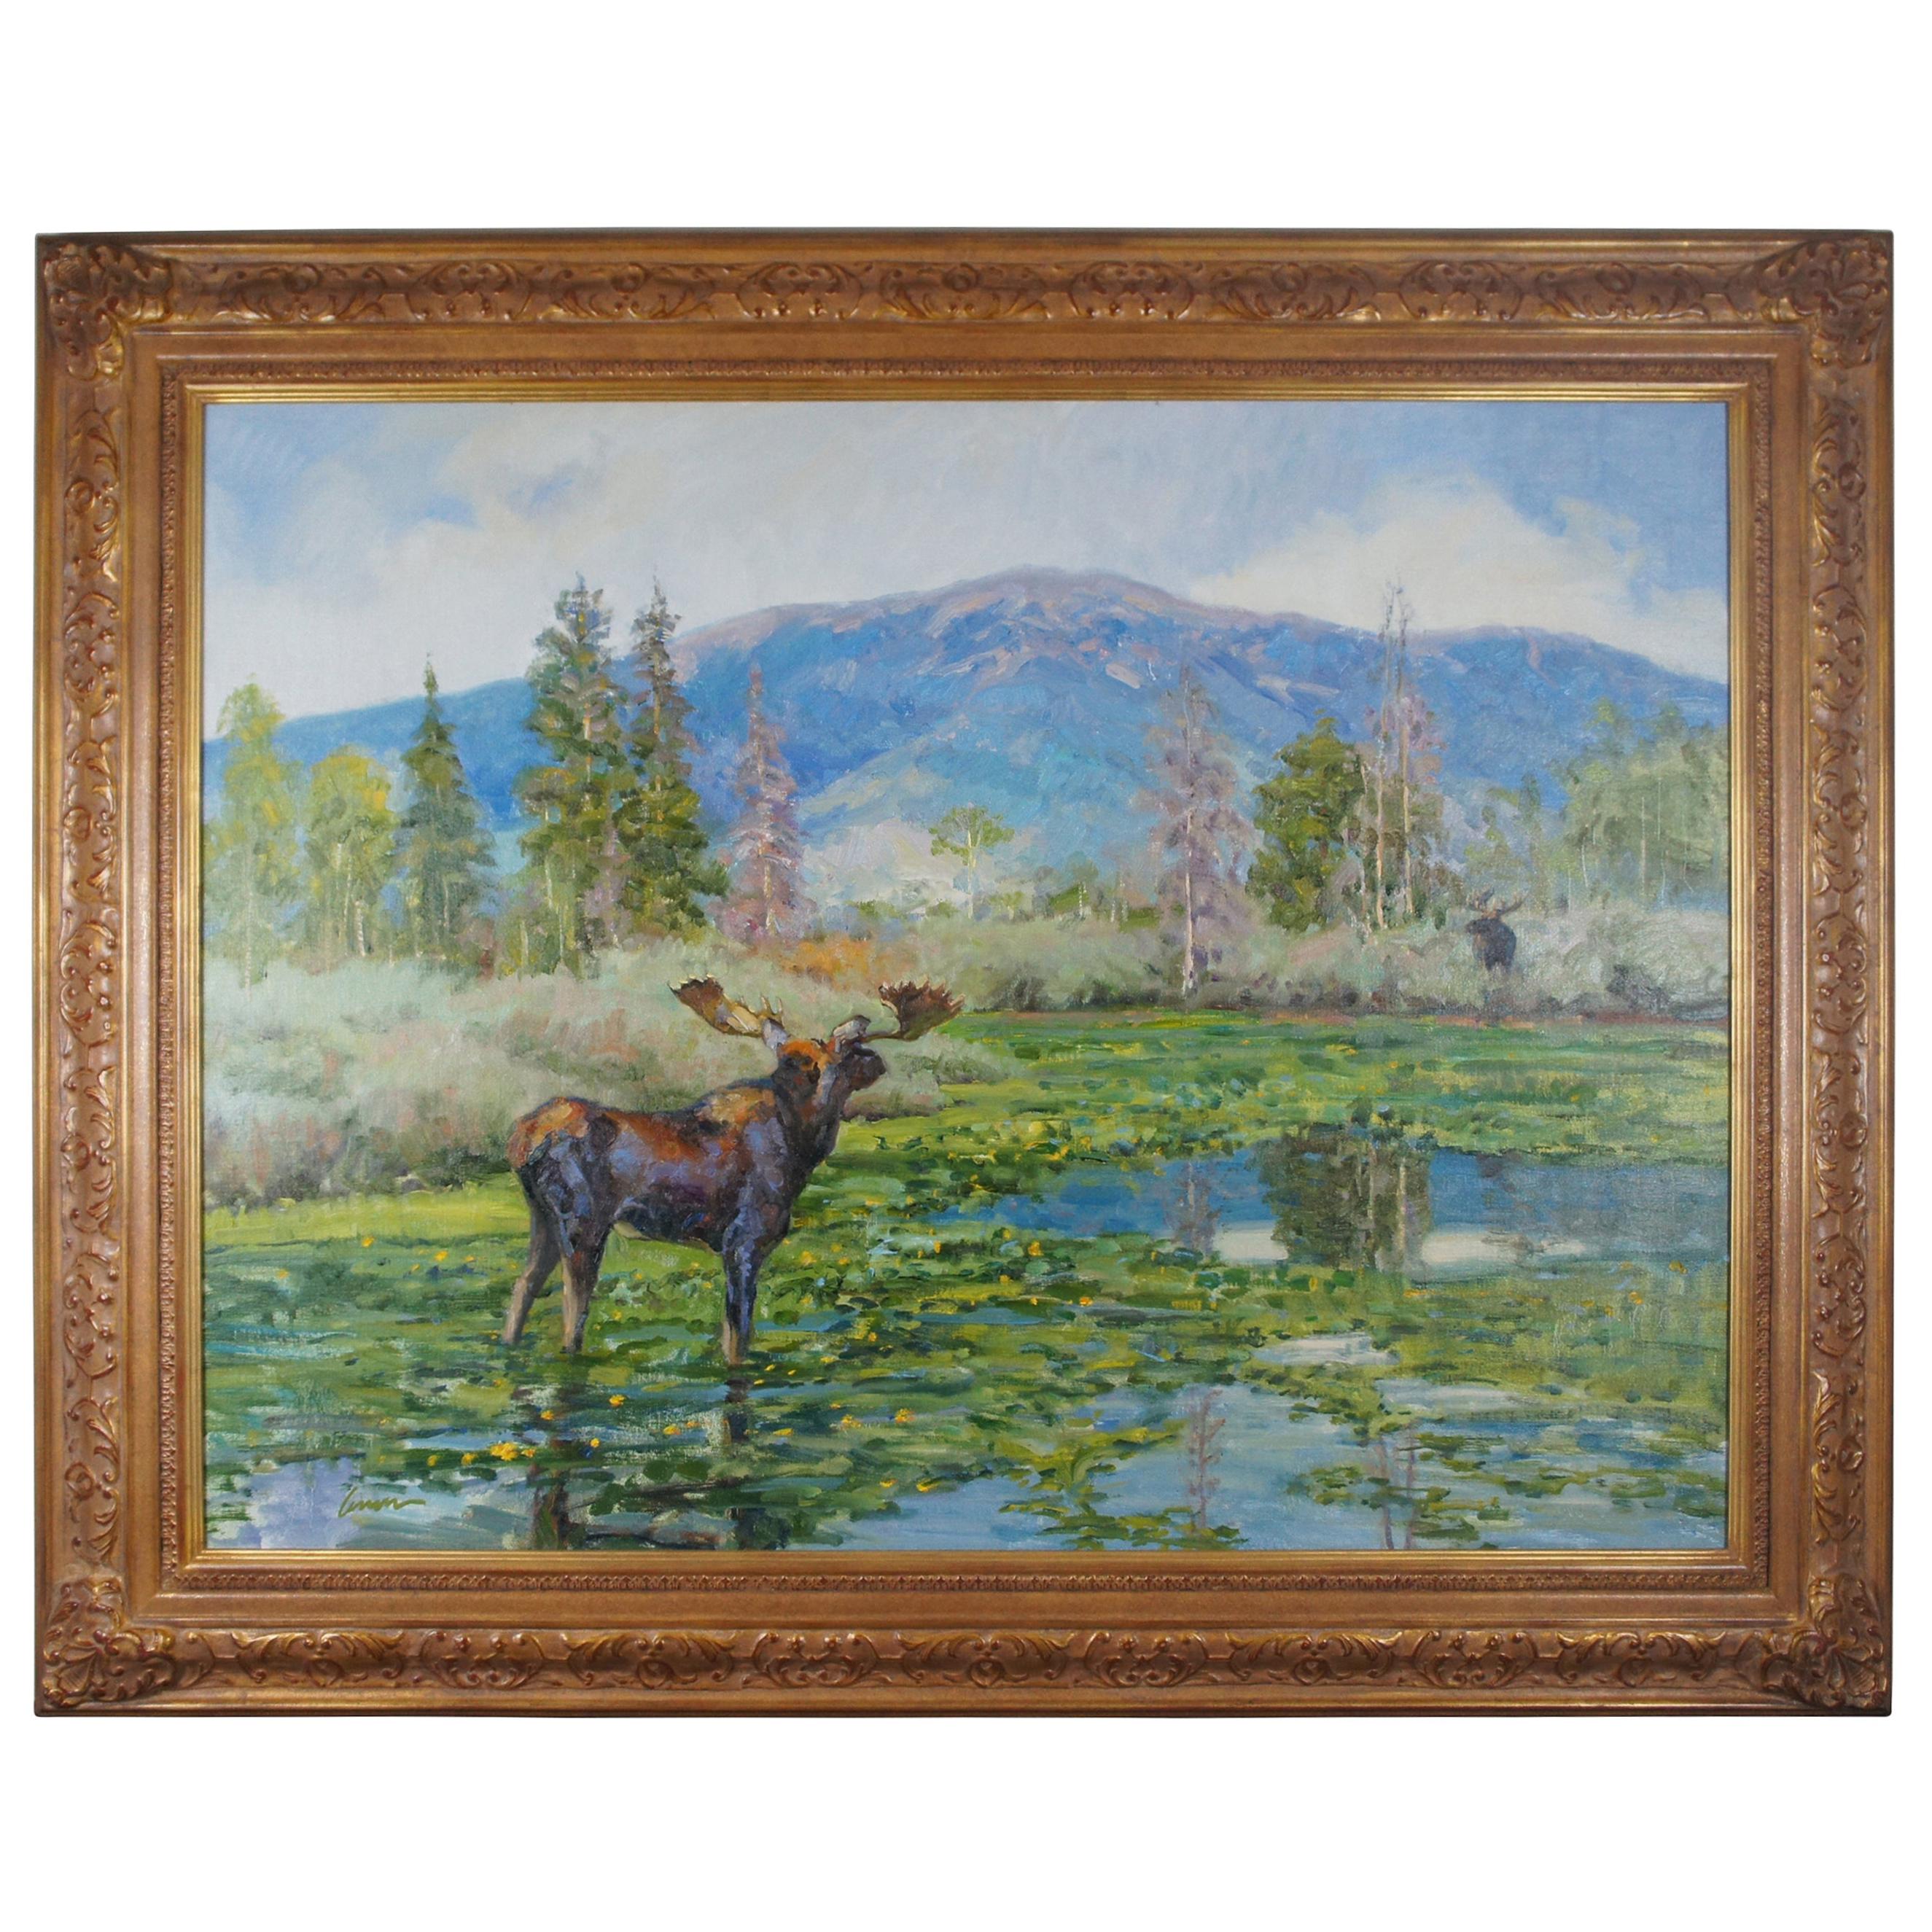 Peinture à l'huile sur toile «stant Thunder » de Kent Lemon, Moose, paysage du Colorado